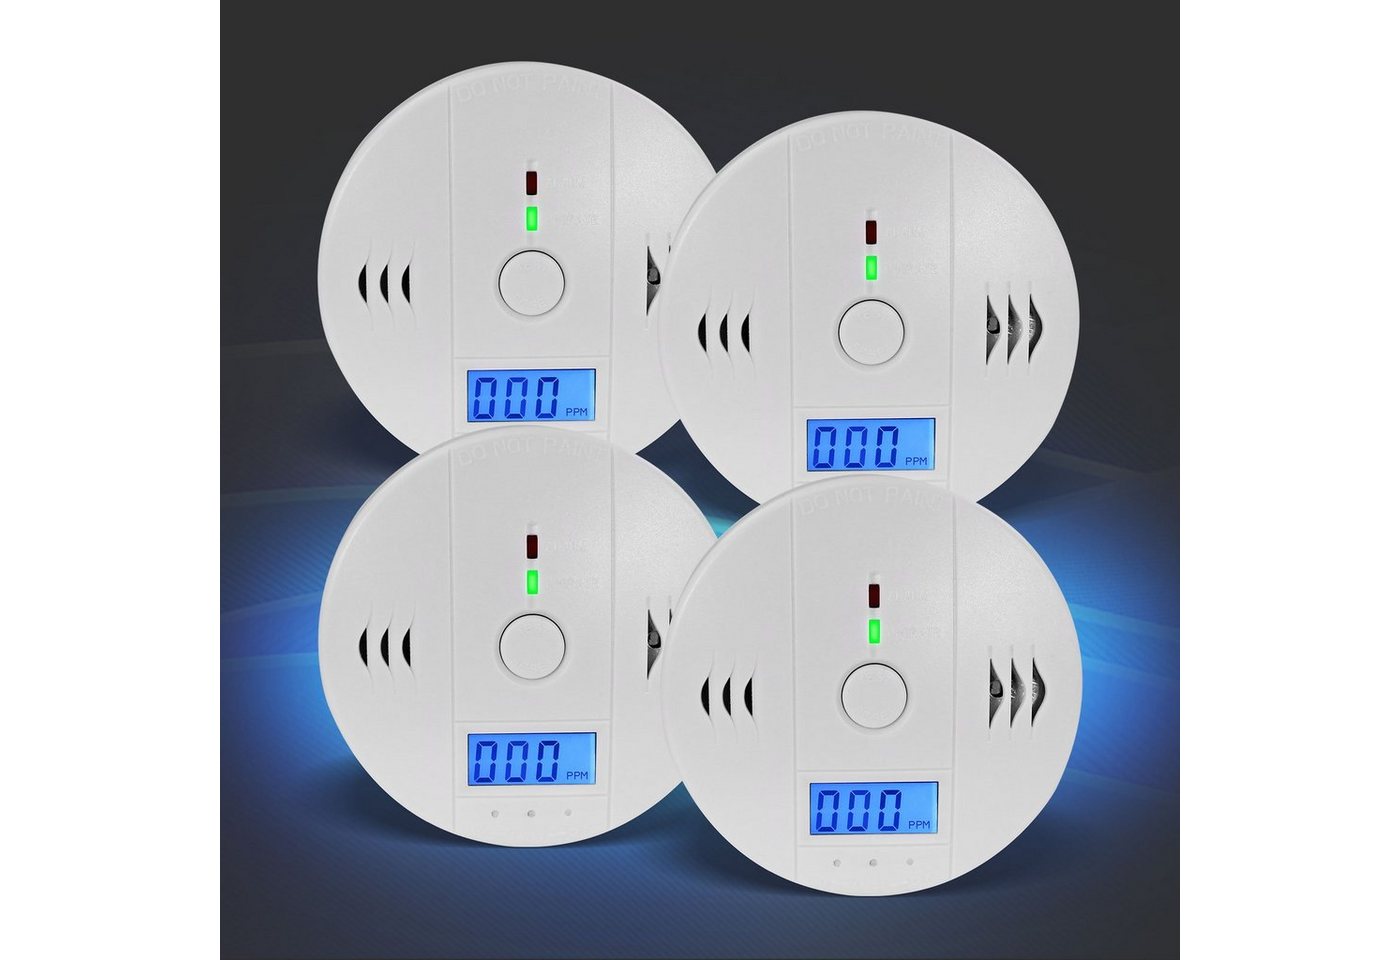 EAXUS Kohlenmonoxid Melder / Detektor - Gasmelder CO-Melder (85dB Alarm, CO-Wert im Display ablesbar, Magnethalterung optional) von EAXUS